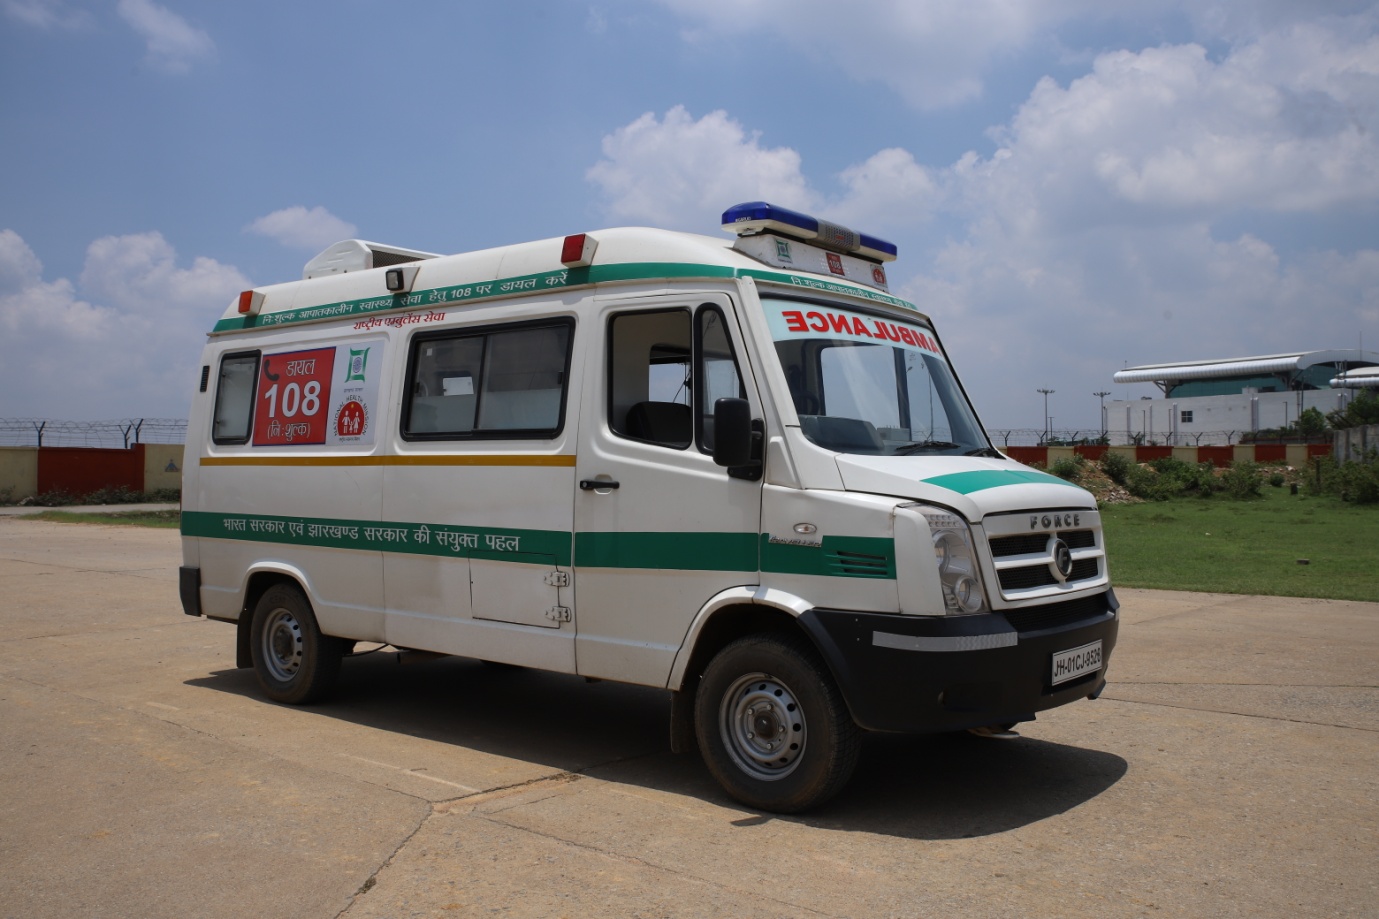 Medical Emergency Ambulance